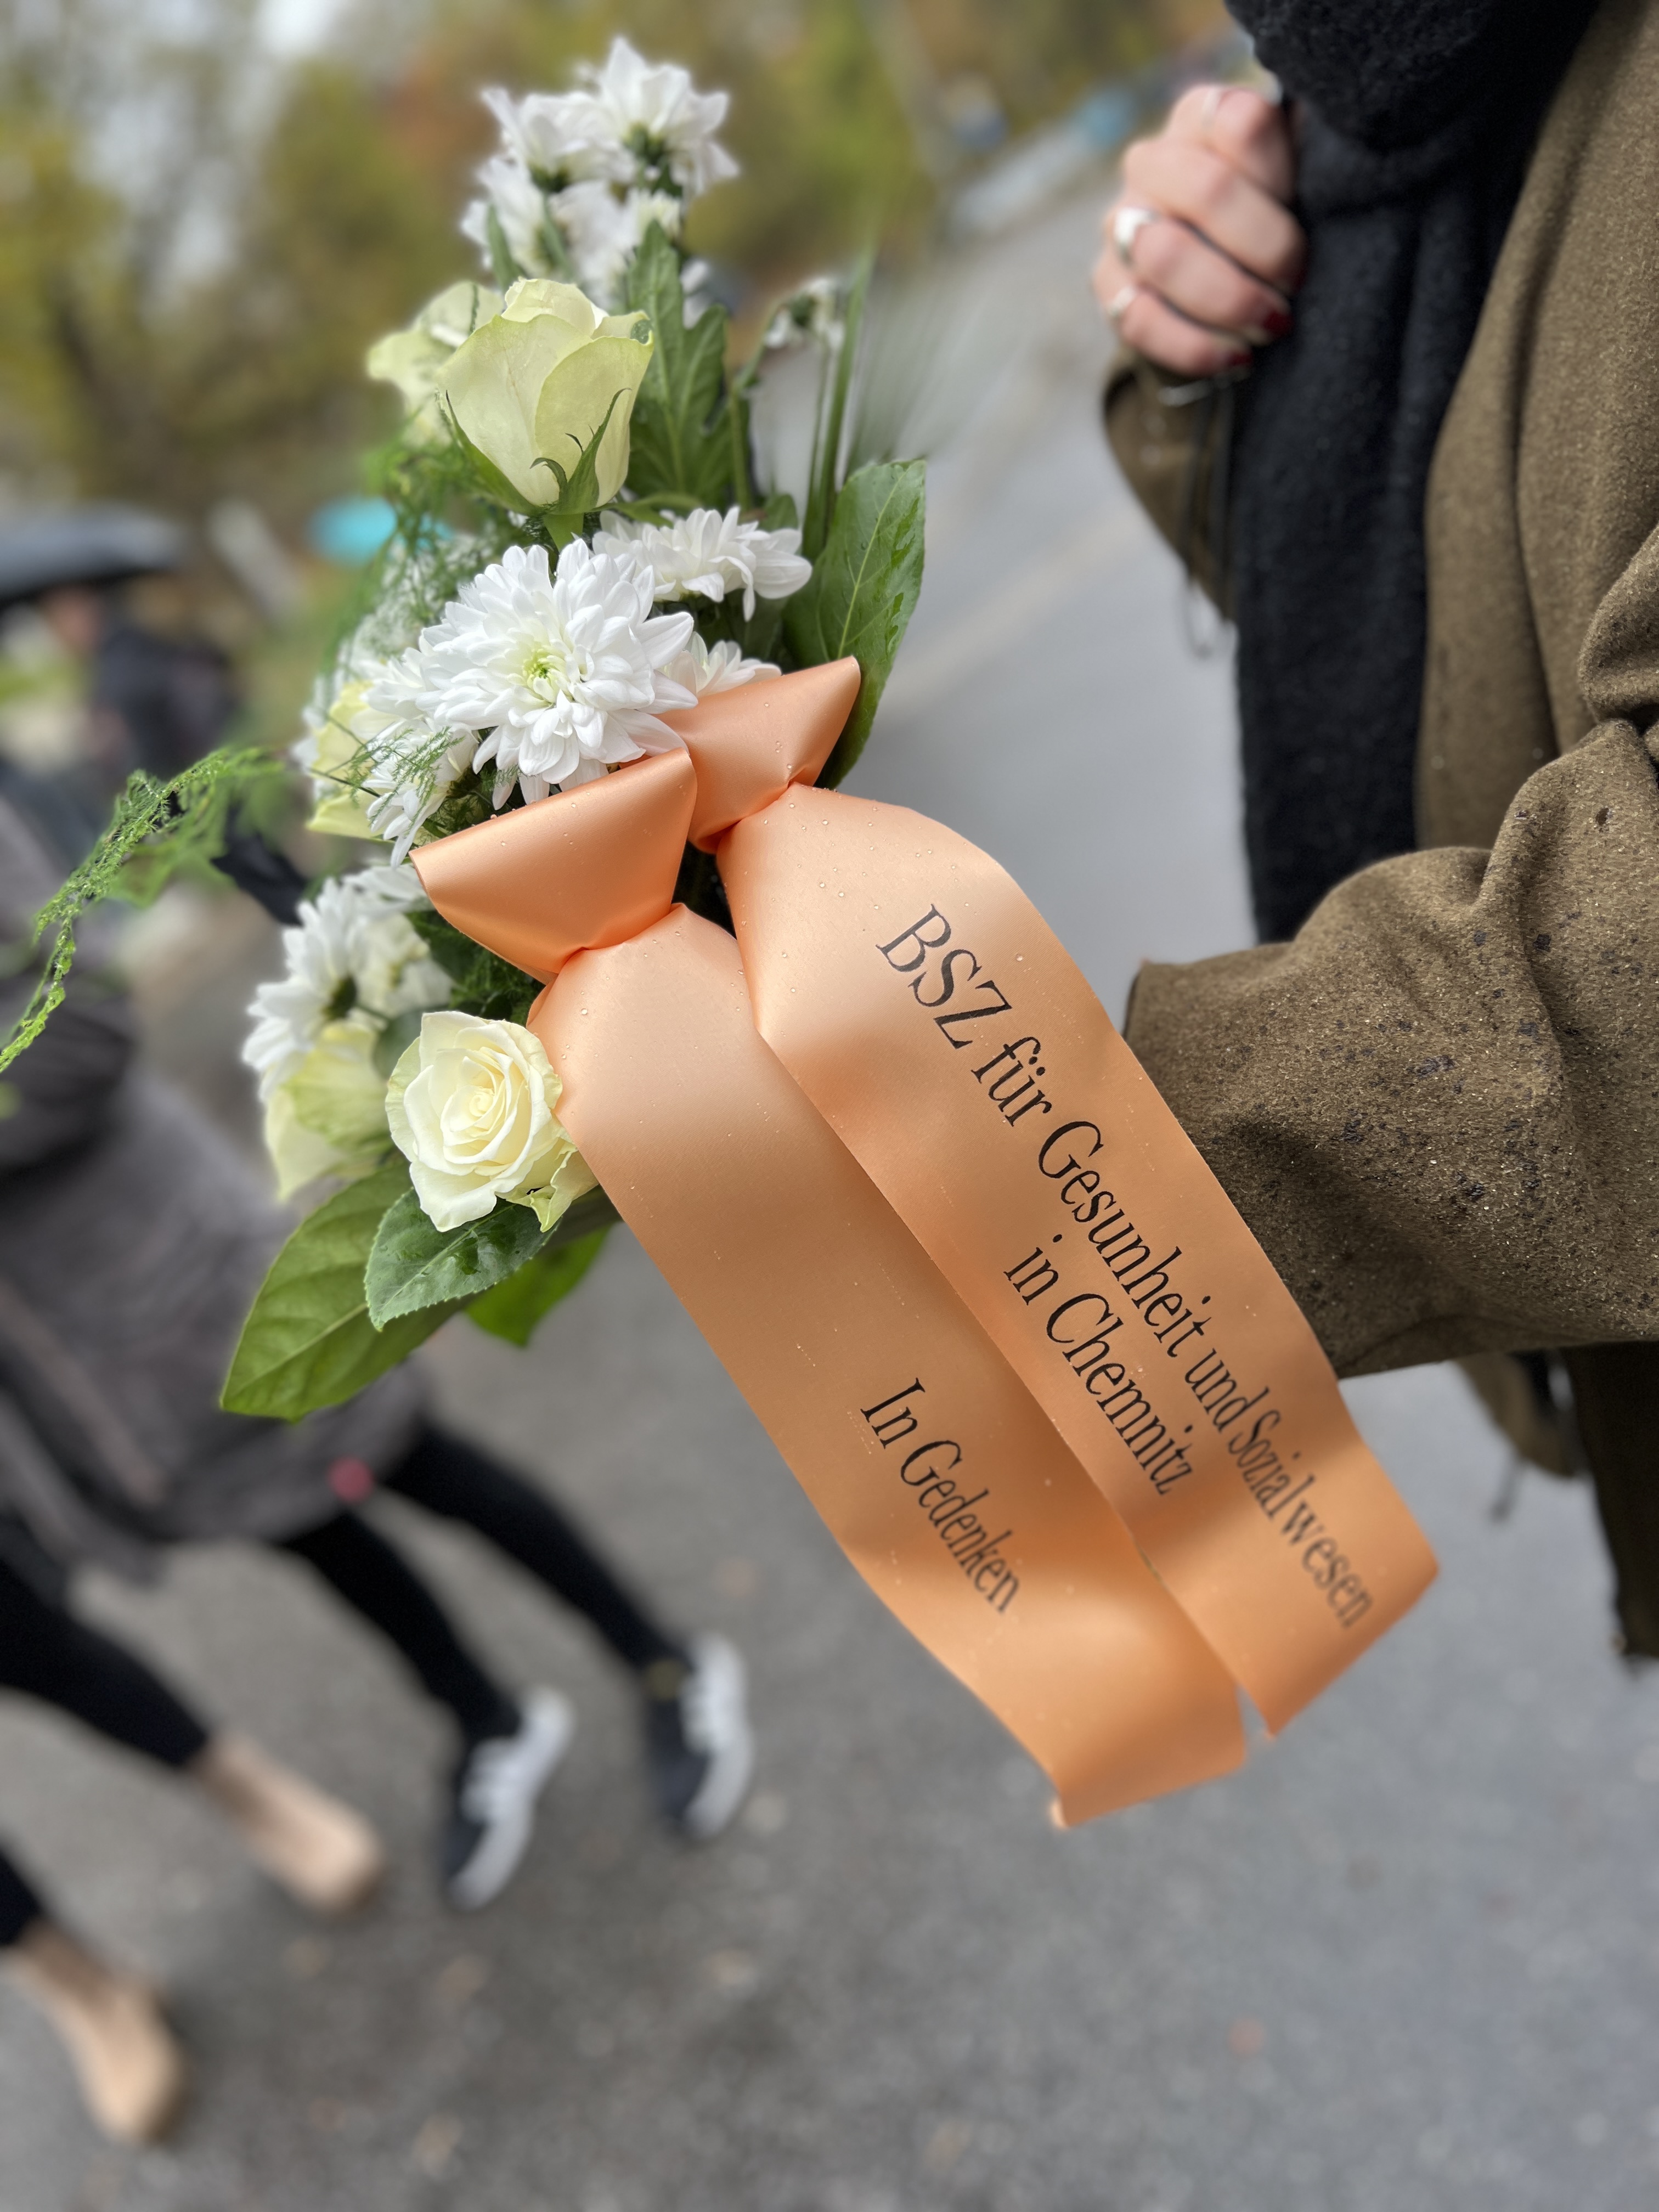 Gedenken an die Opfer der Pogromnacht in Chemnitz